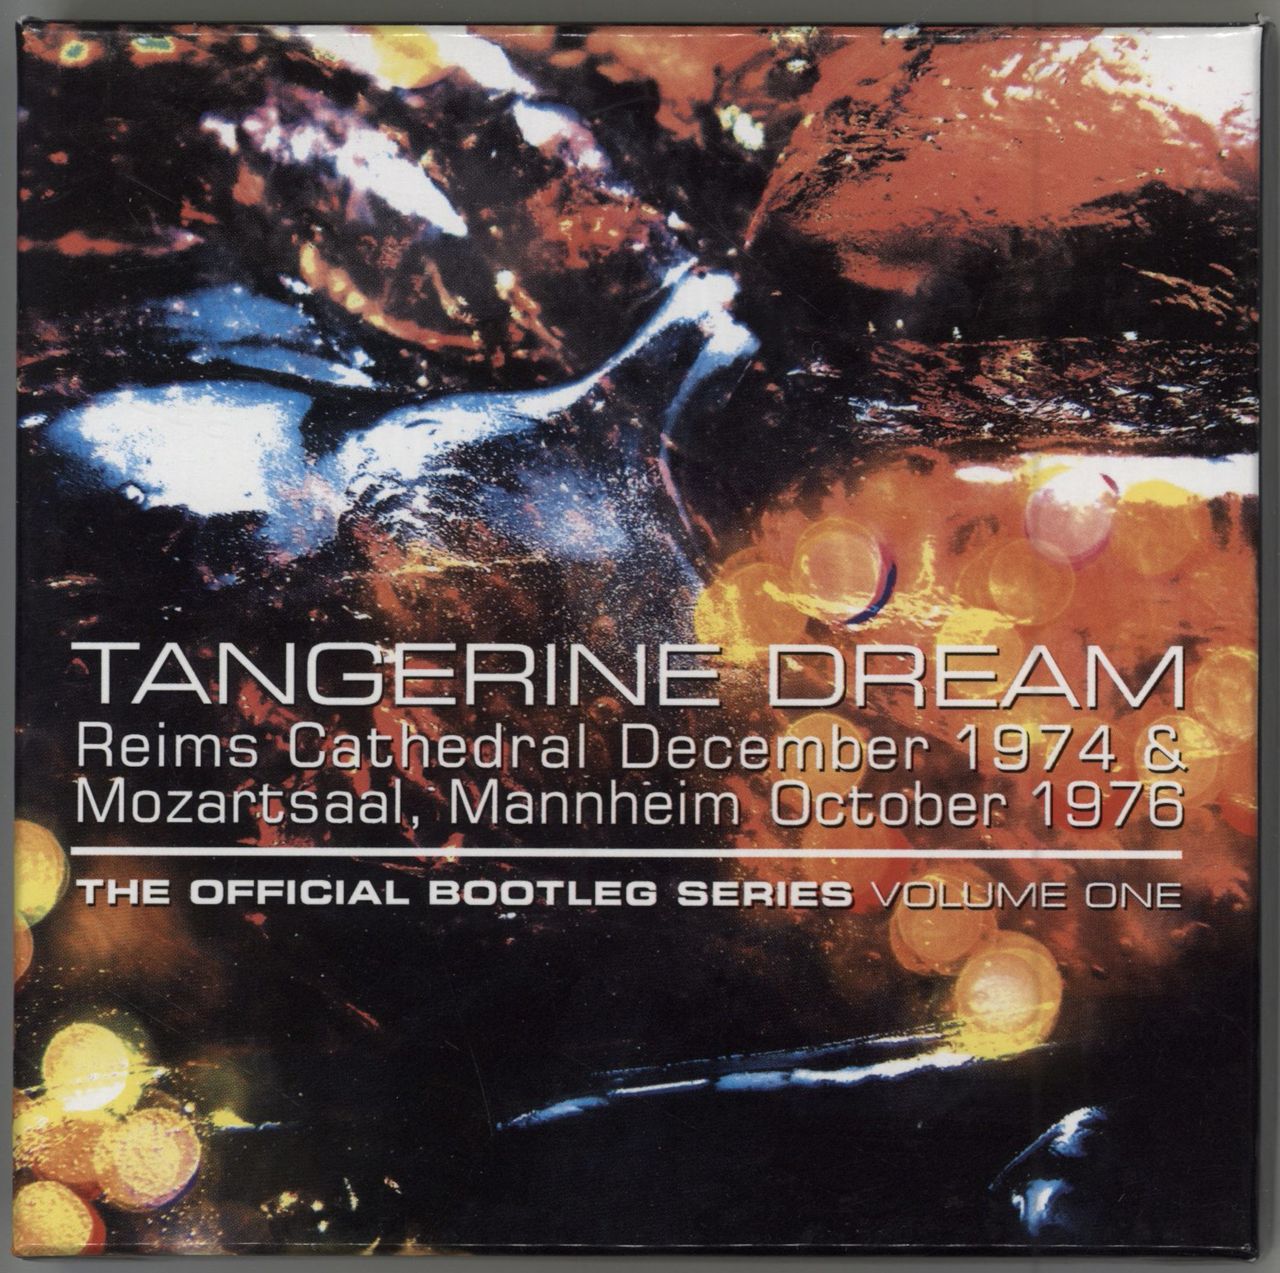 Tangerine Dream The Official Bootleg Series Volume One UK CD Album Box Set EREACD41032